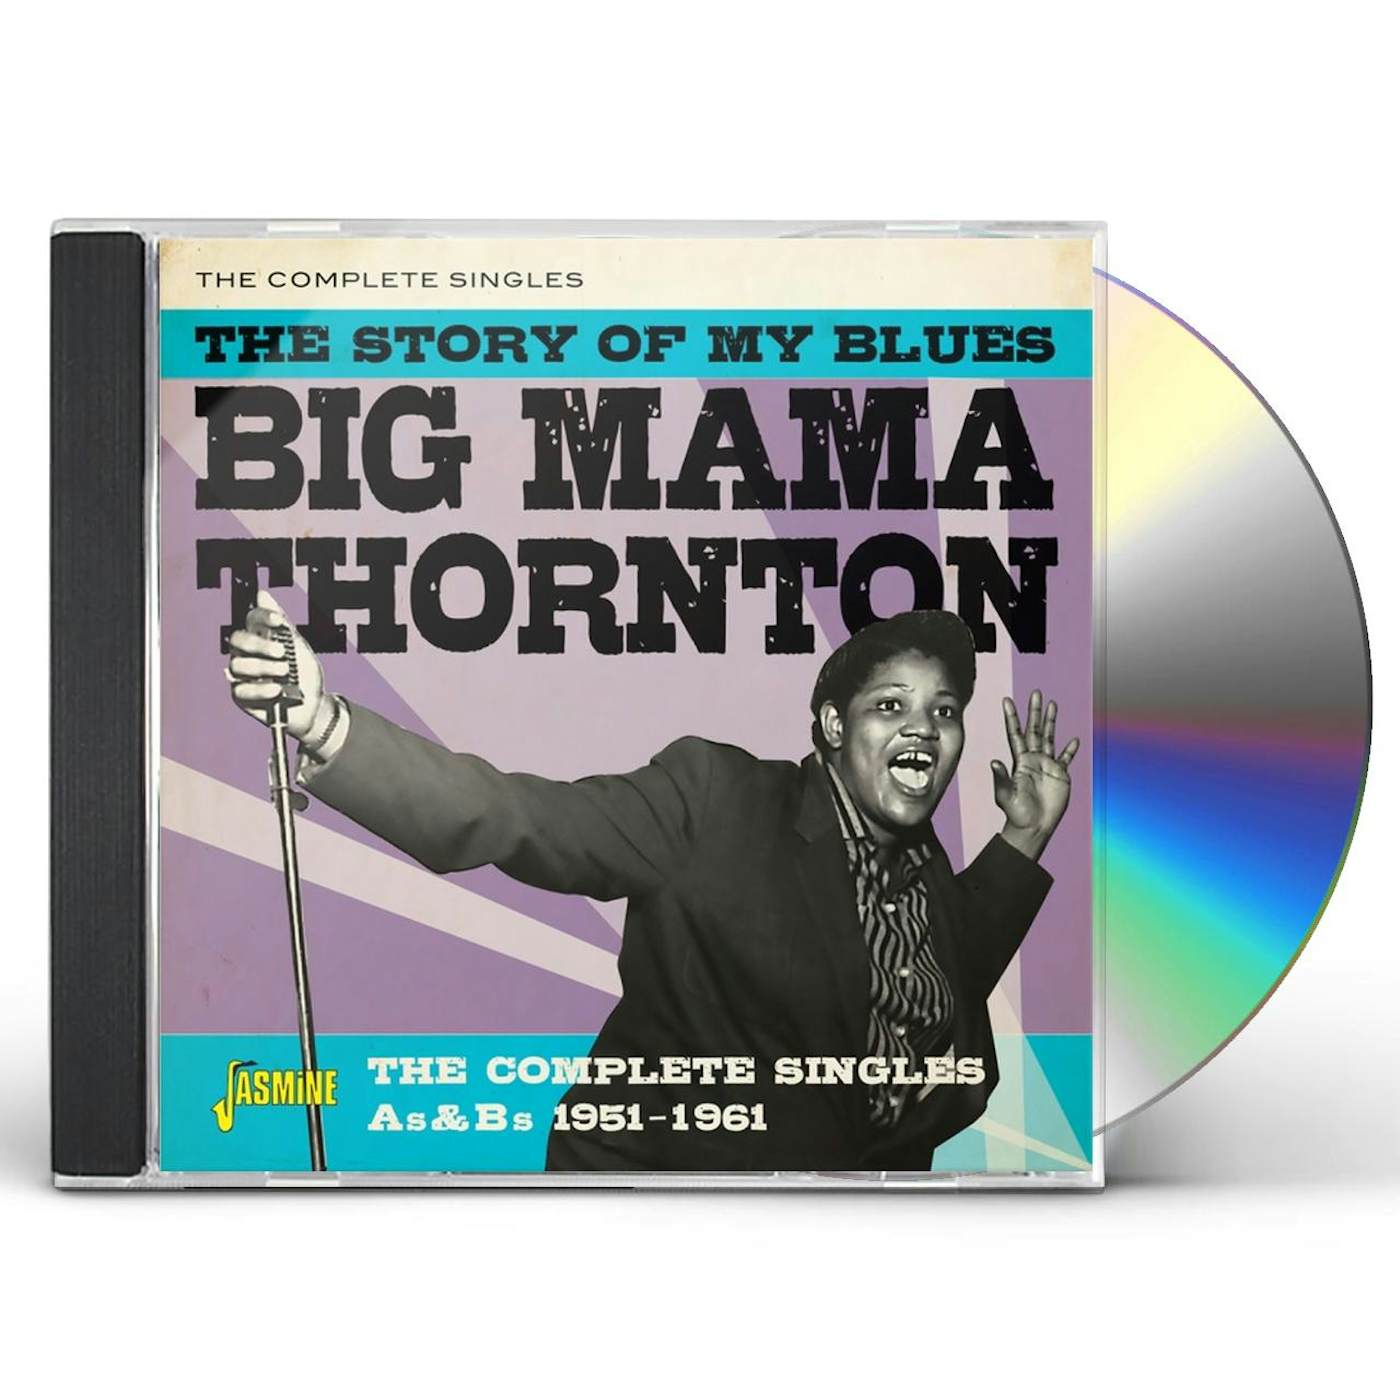 Big Mama Thornton, Music Legend #2 Bath Towel by Esoterica Art